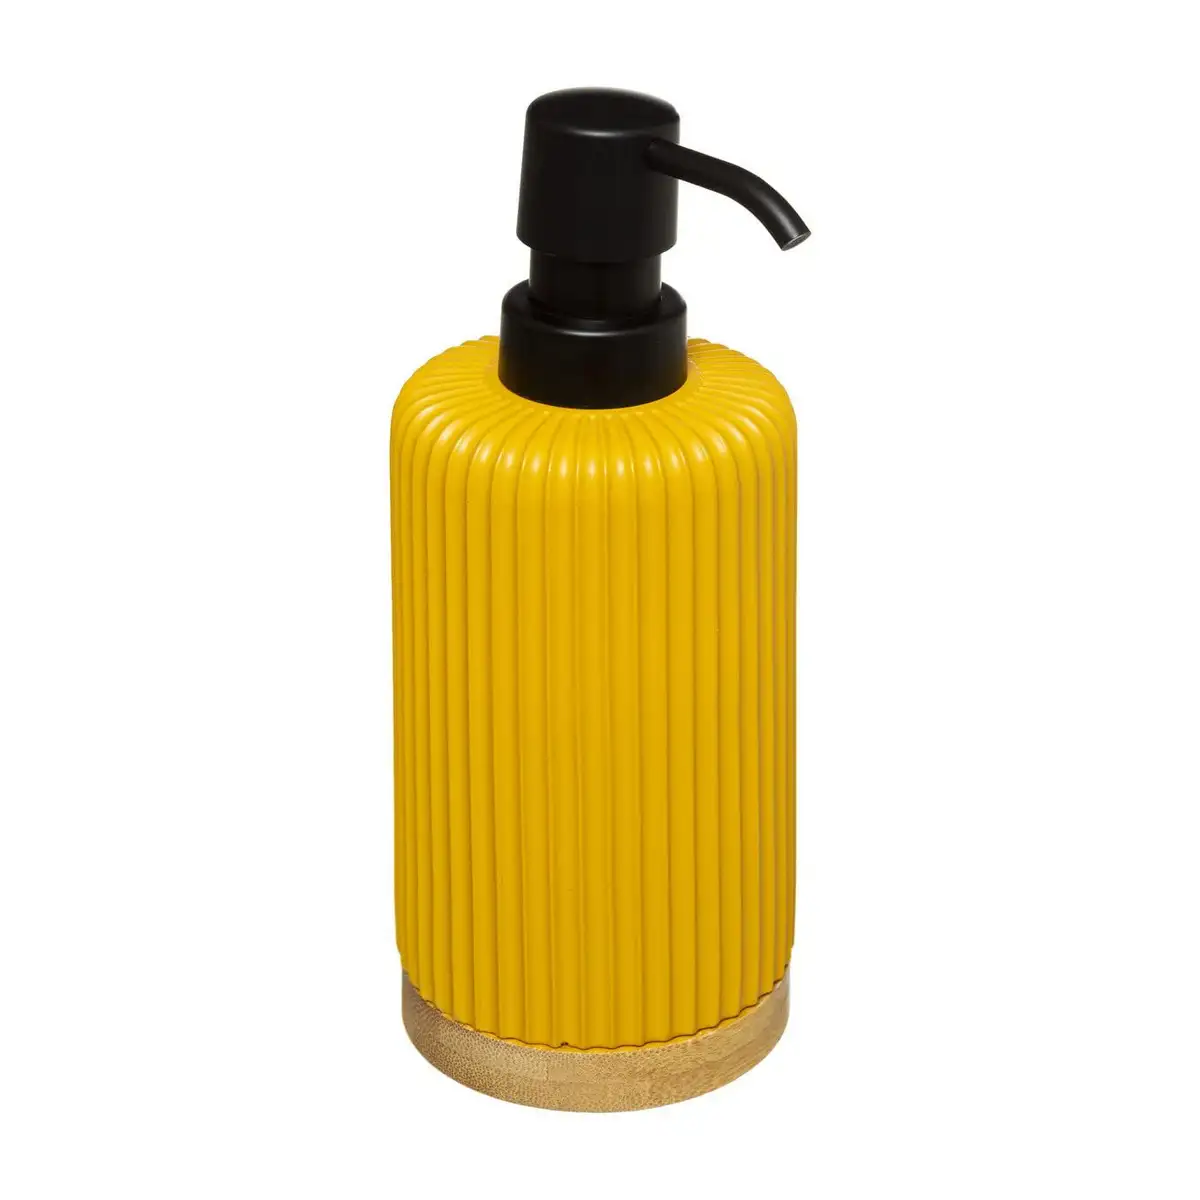 Distributeur de savon 5five colors moutarde_1595. Bienvenue sur DIAYTAR SENEGAL - Où l'Authenticité Rencontre le Confort. Plongez dans notre univers de produits qui allient tradition et commodité pour répondre à vos besoins.